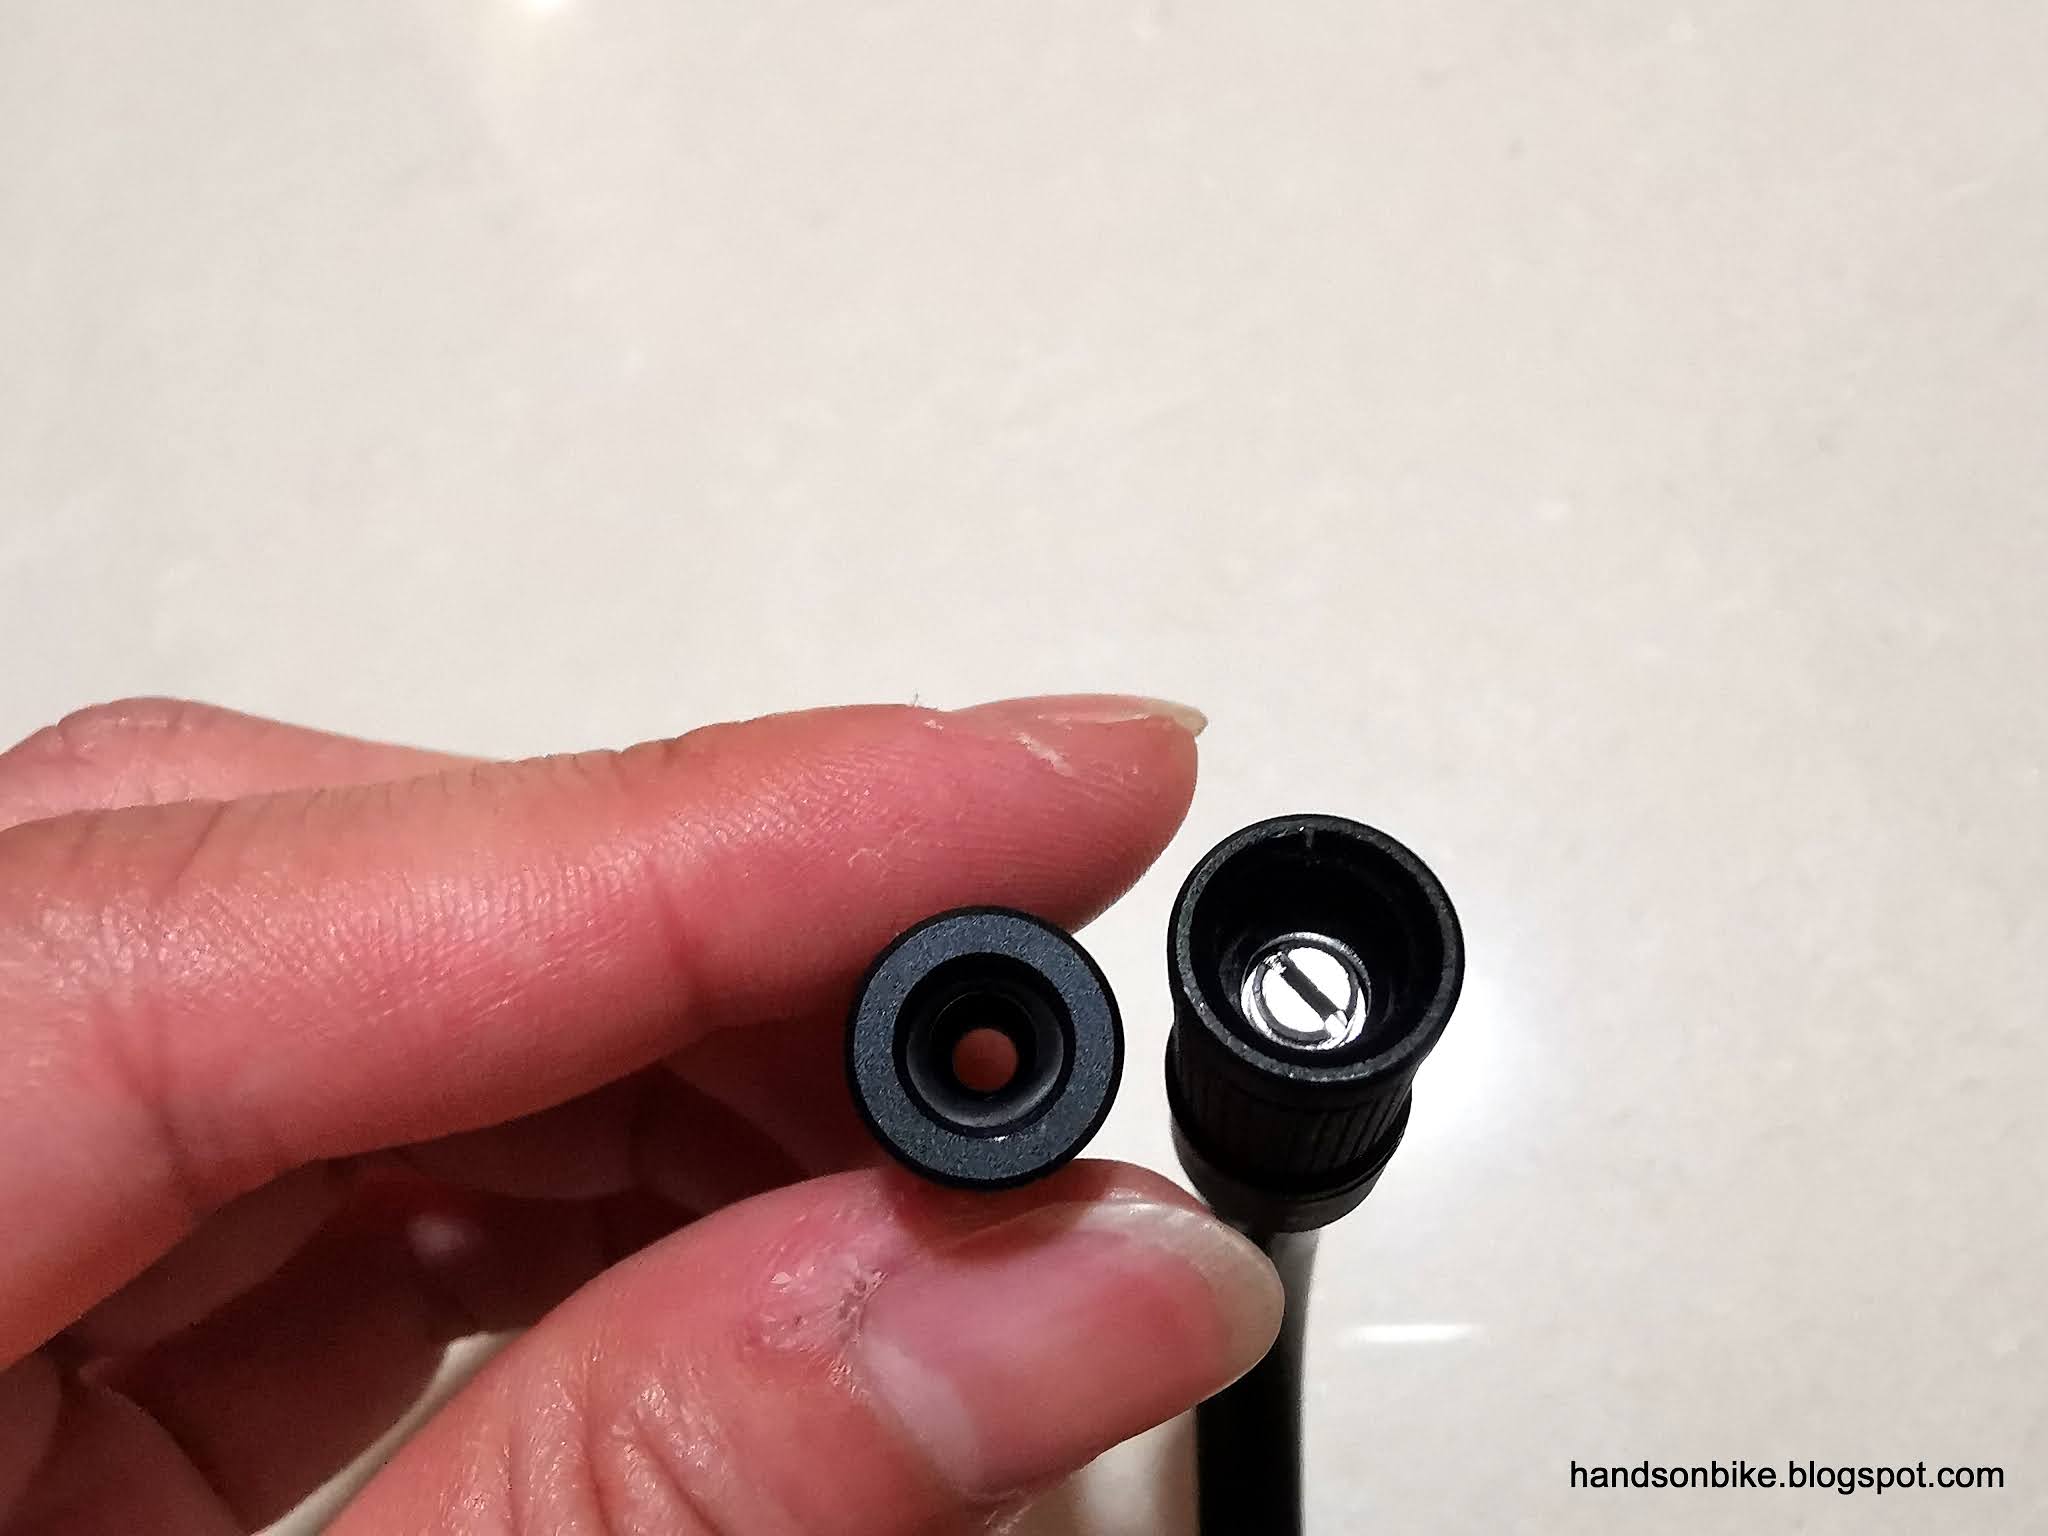 Hands On Bike: Xiaomi Portable Air Pump